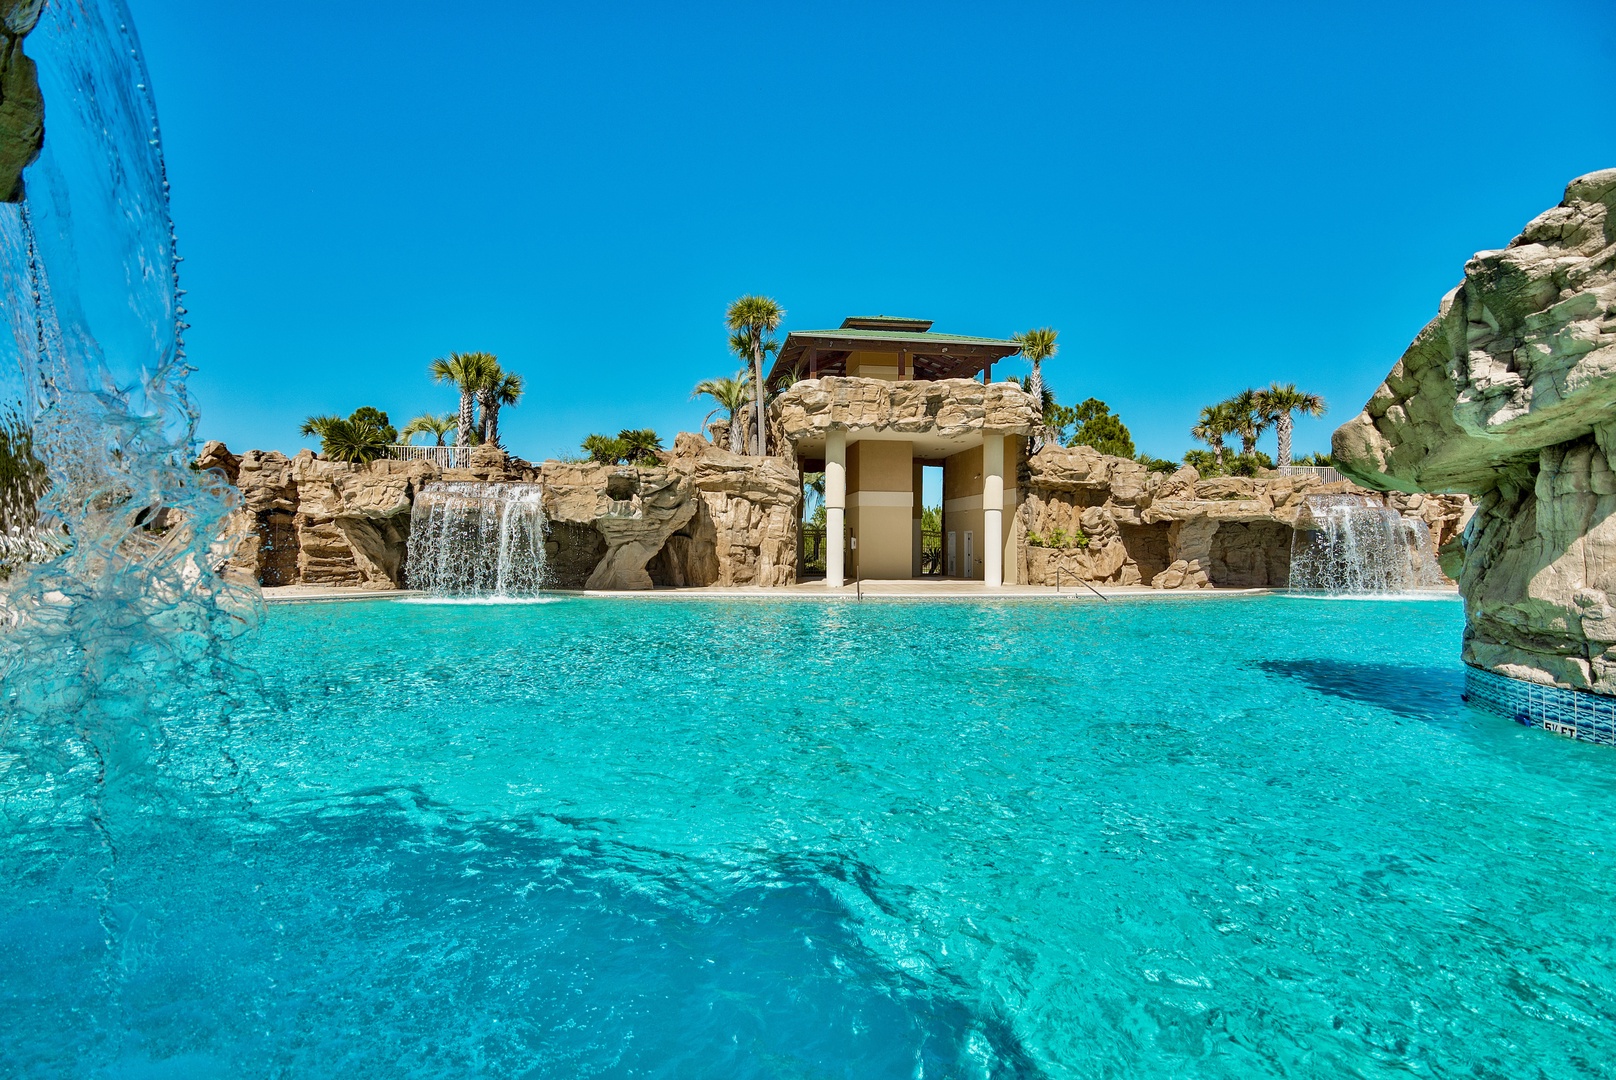 The amazing Cypress Breeze neighborhood pool!